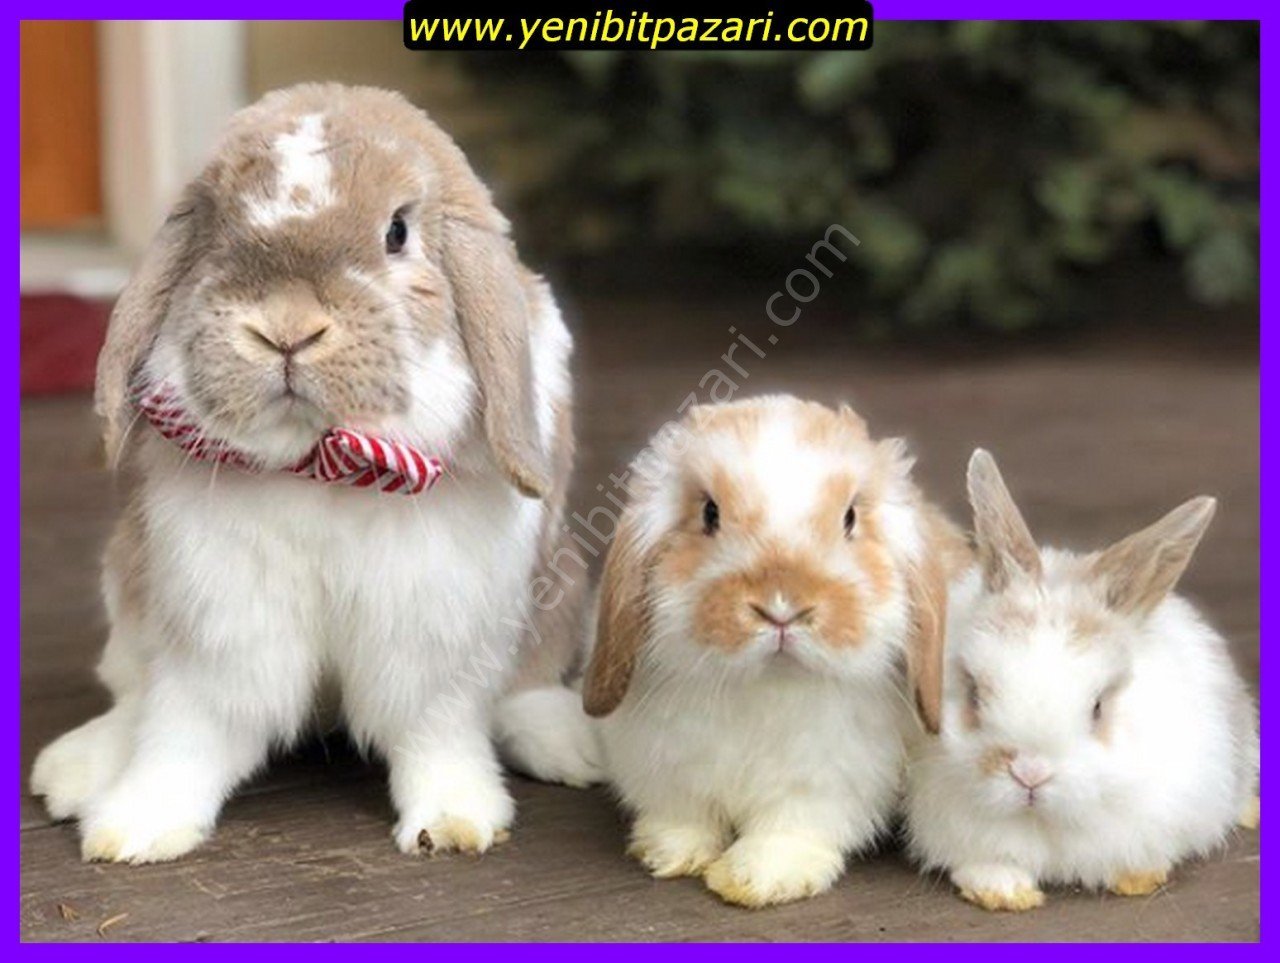 hollanda lop ırkı yavru tavşan farklı renkleri ve çok renkli  satış satanlar ısparta merkez içi teslim şehirdışı kargo yoktur 1-2-3 haftalık toptan yada adet satılık